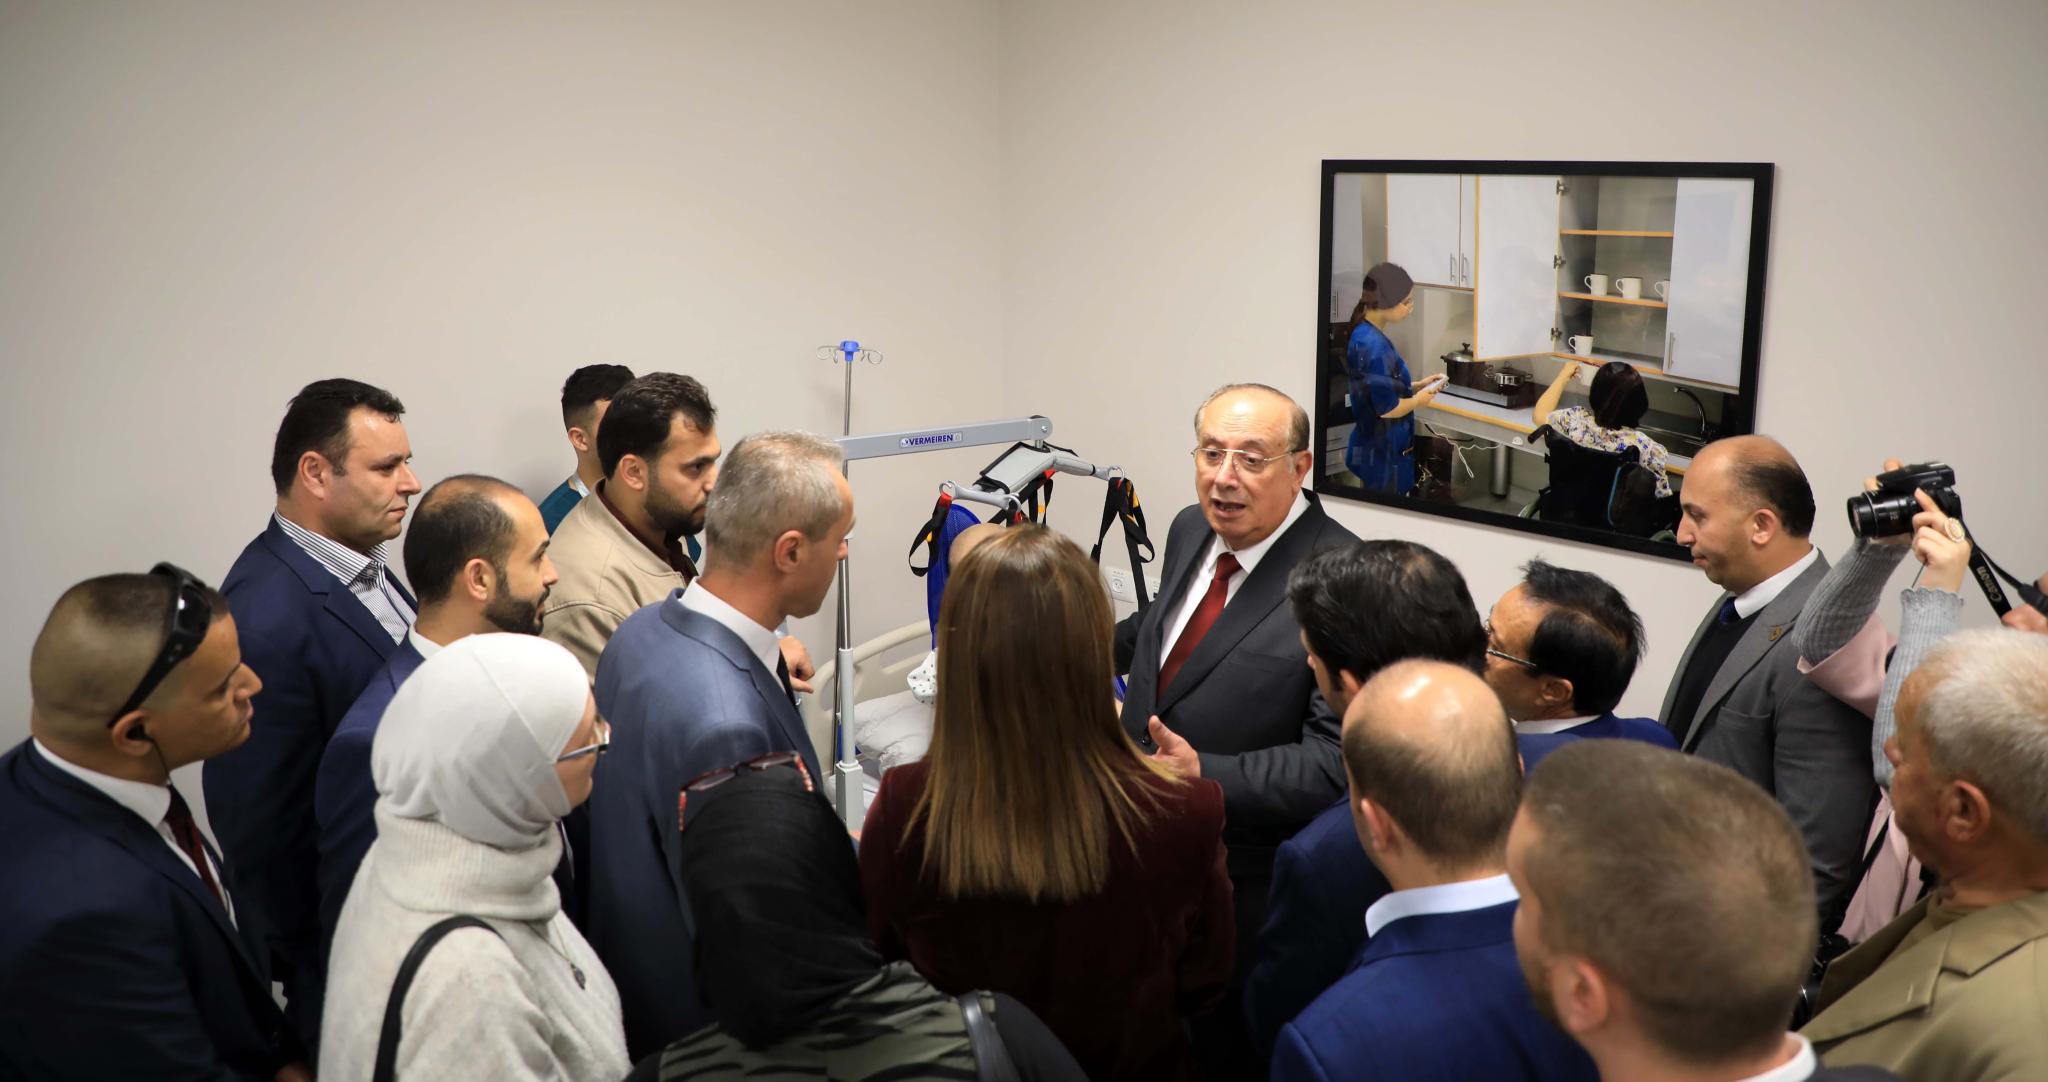 الجامعة تحتفل بافتتاح المجمع الطبي التأهيلي الجامعي الفريد من نوعه على مستوى فلسطين